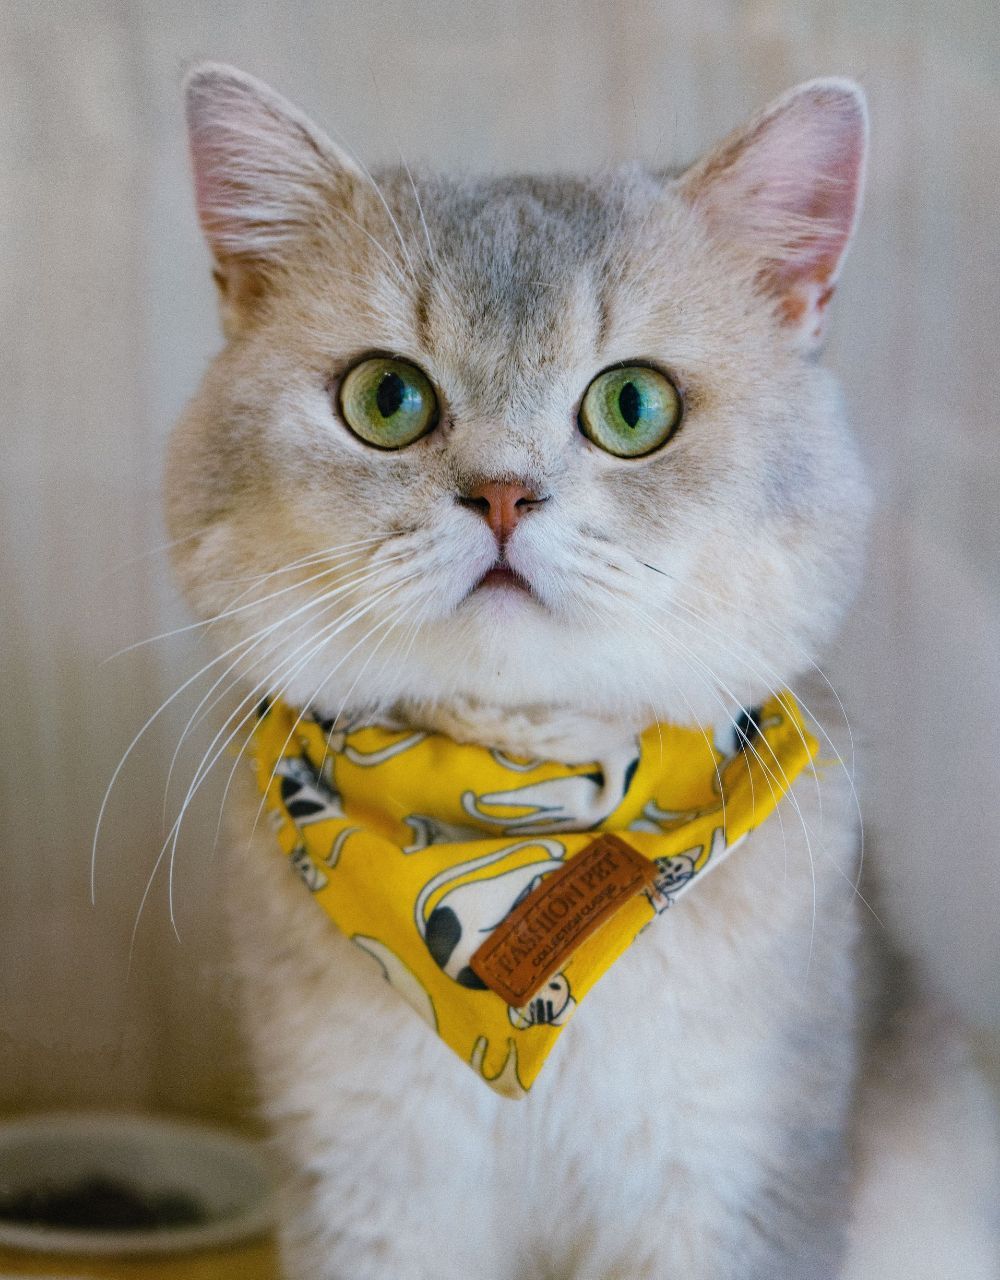 A close up of a cat wearing a yellow bandana